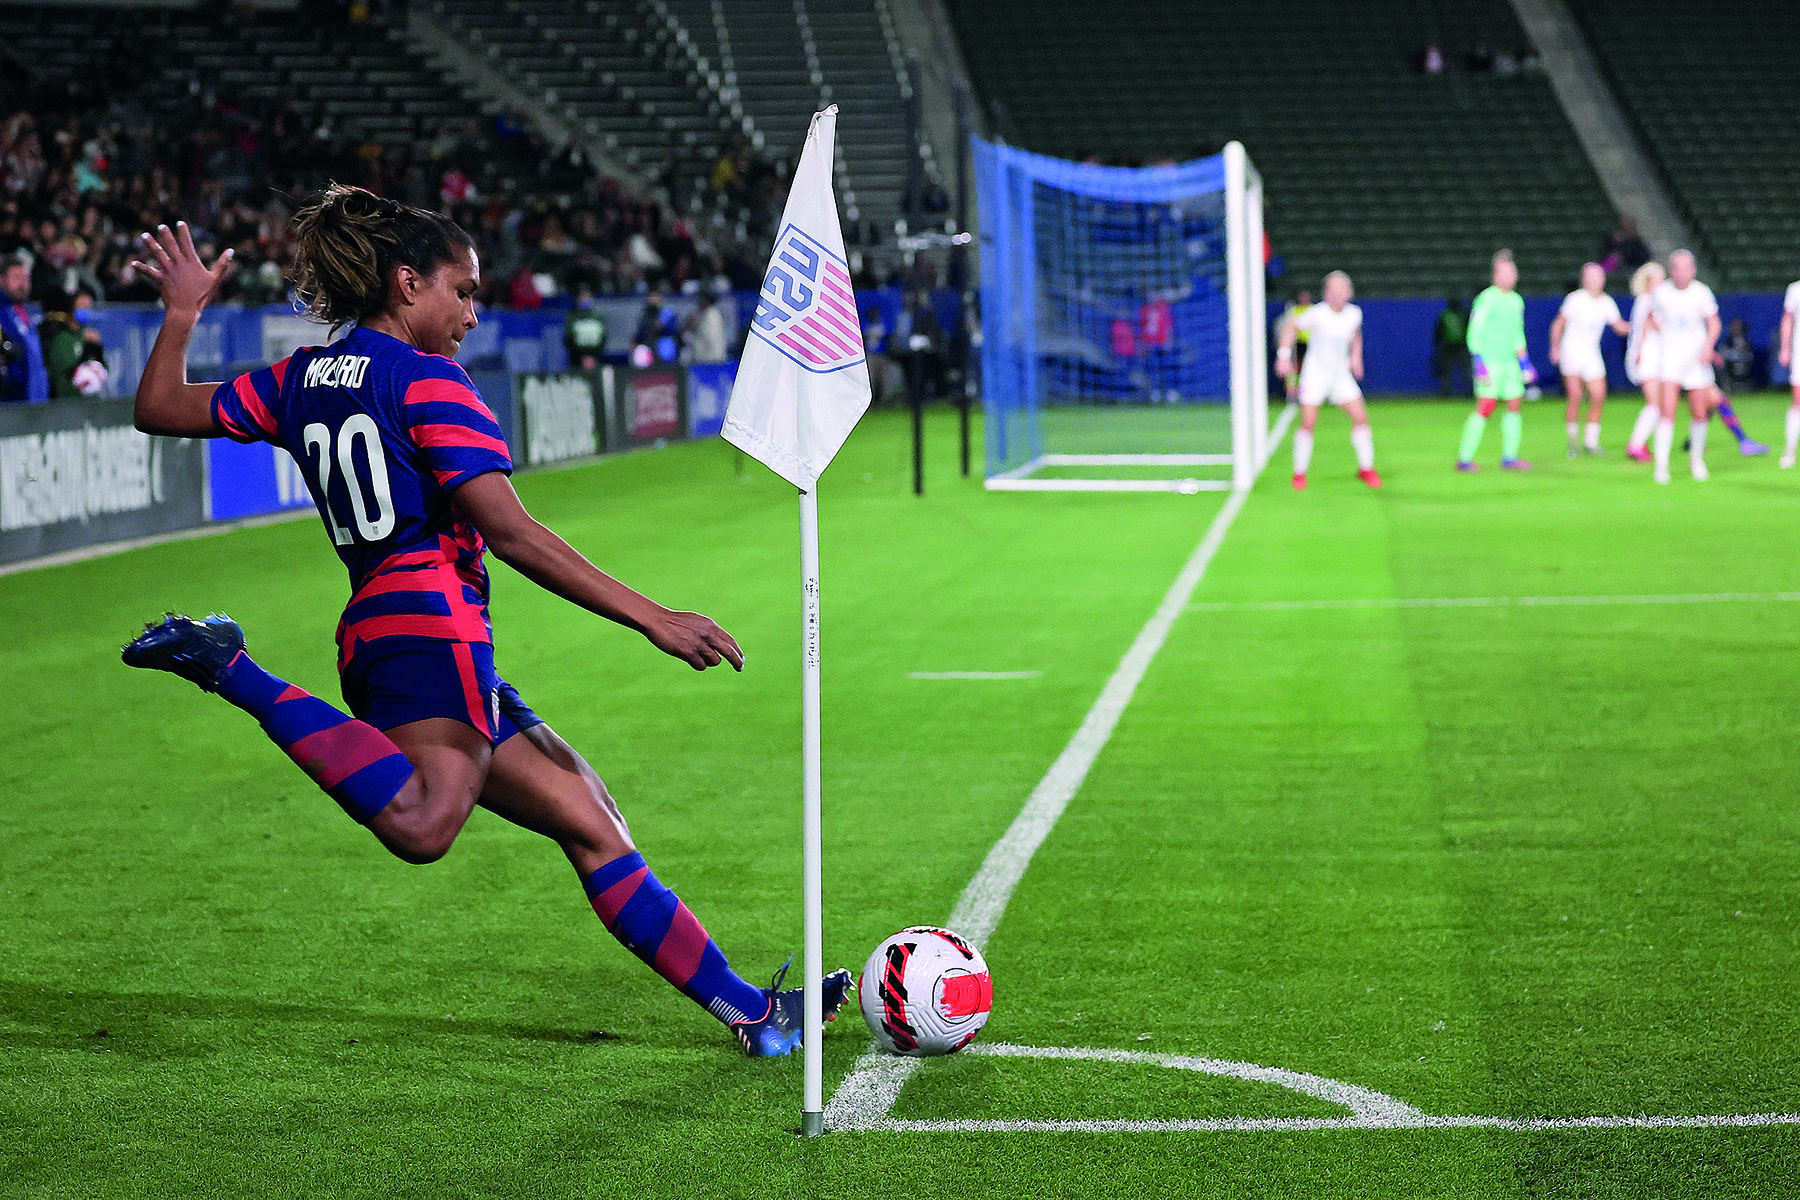 Fotografia. Mulher uniformizada em campo de futebol. Ela cobra escanteio onde há uma bandeira. Ao fundo, pessoas na frente do gol.